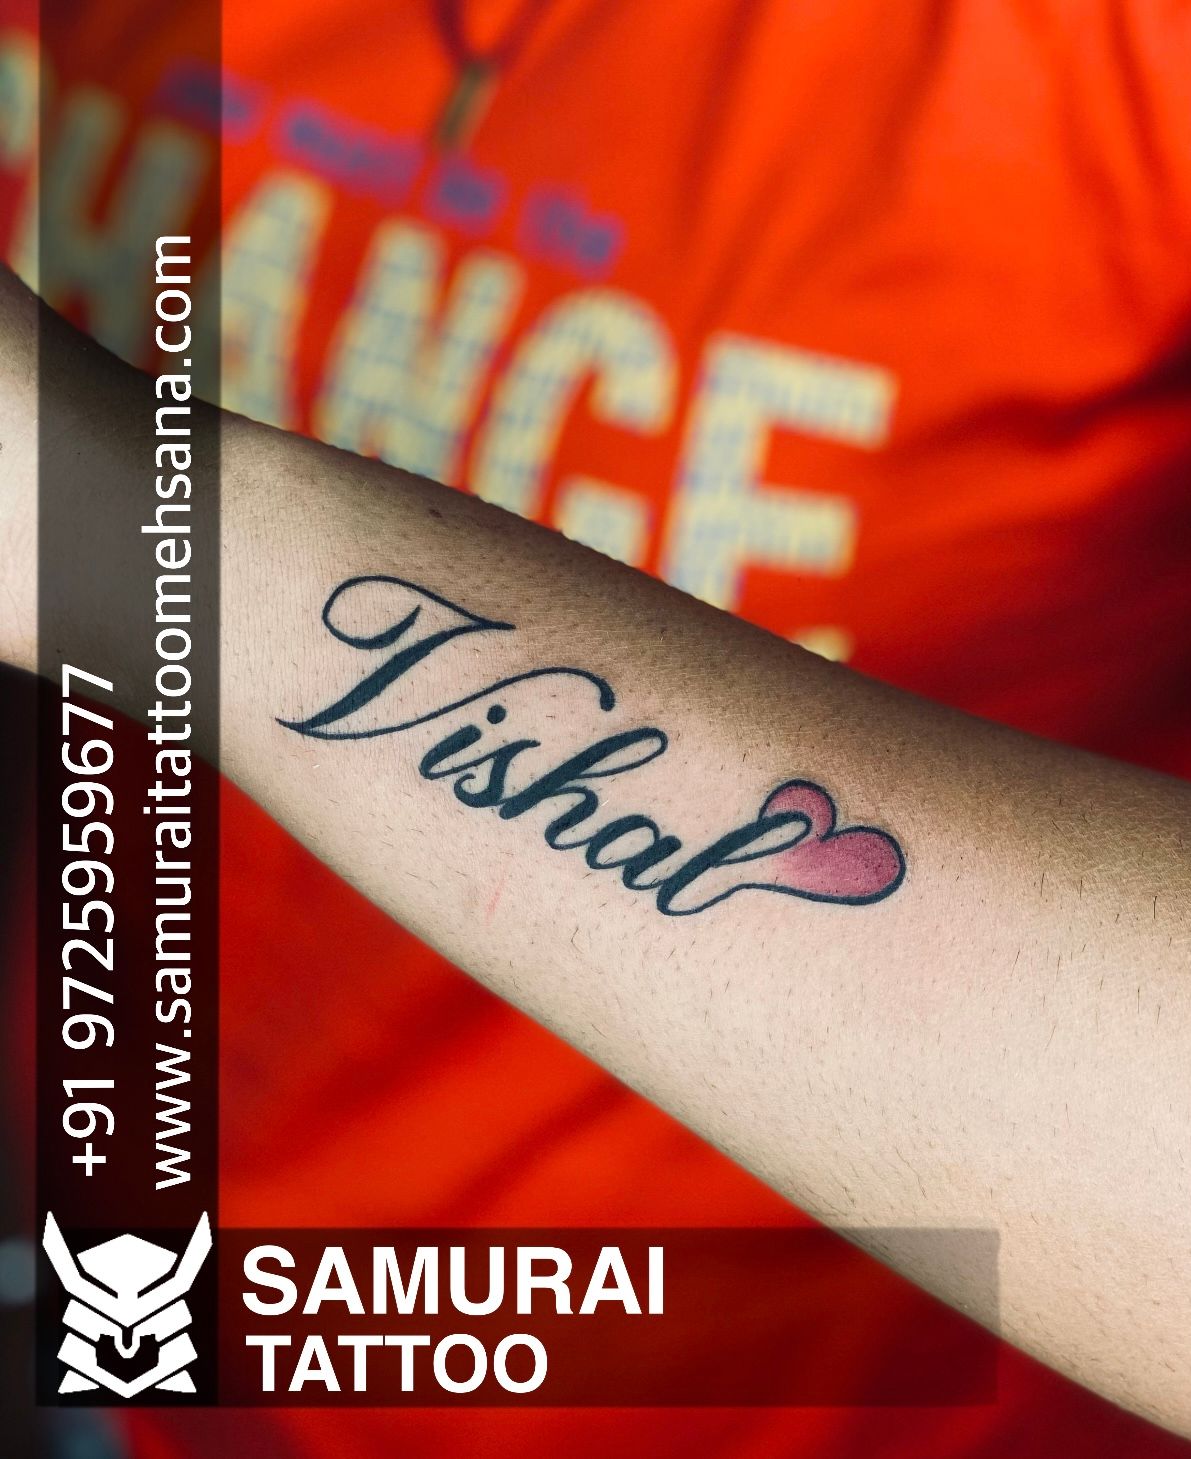 Share more than 67 love vishal name tattoo super hot  thtantai2